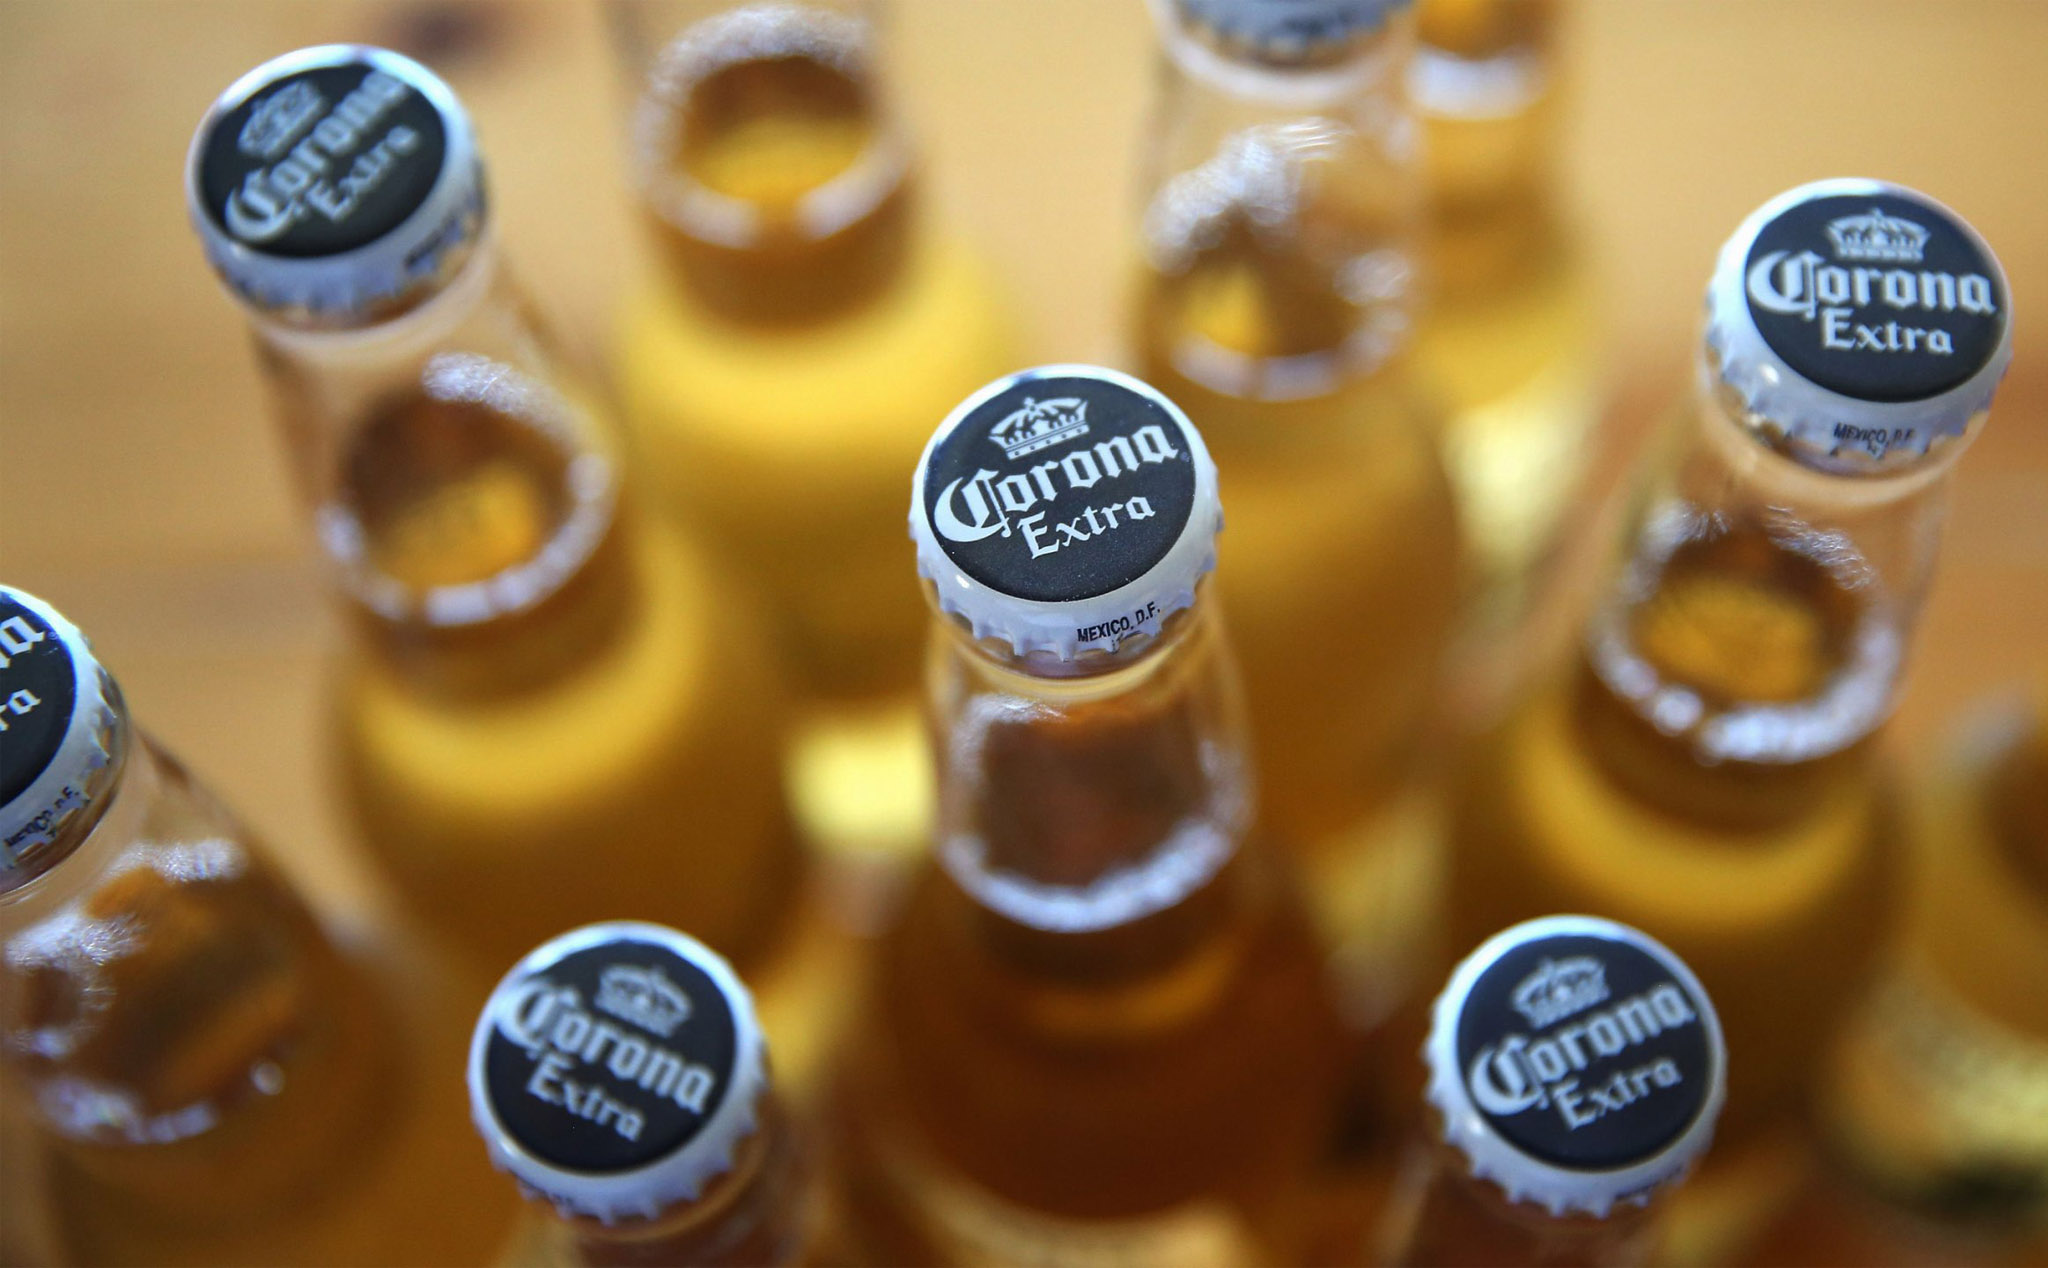 Hãng sản xuất bia Corona Extra có bị thiệt hại vì dịch COVID-19?